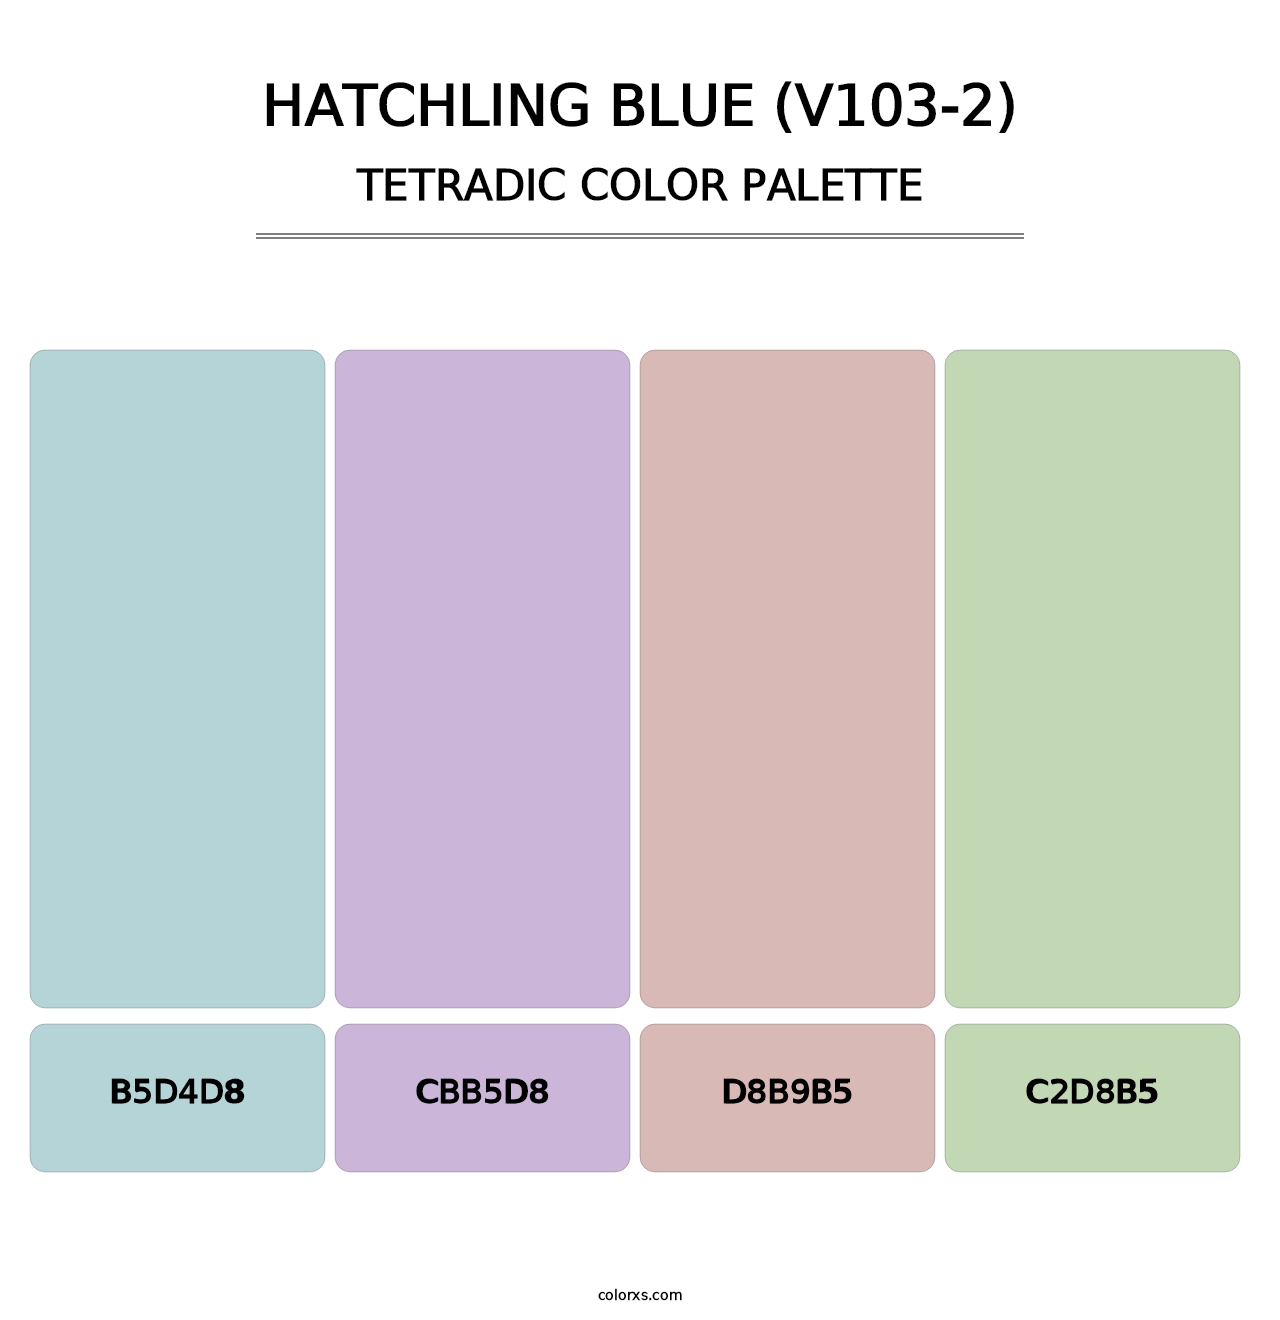 Hatchling Blue (V103-2) - Tetradic Color Palette